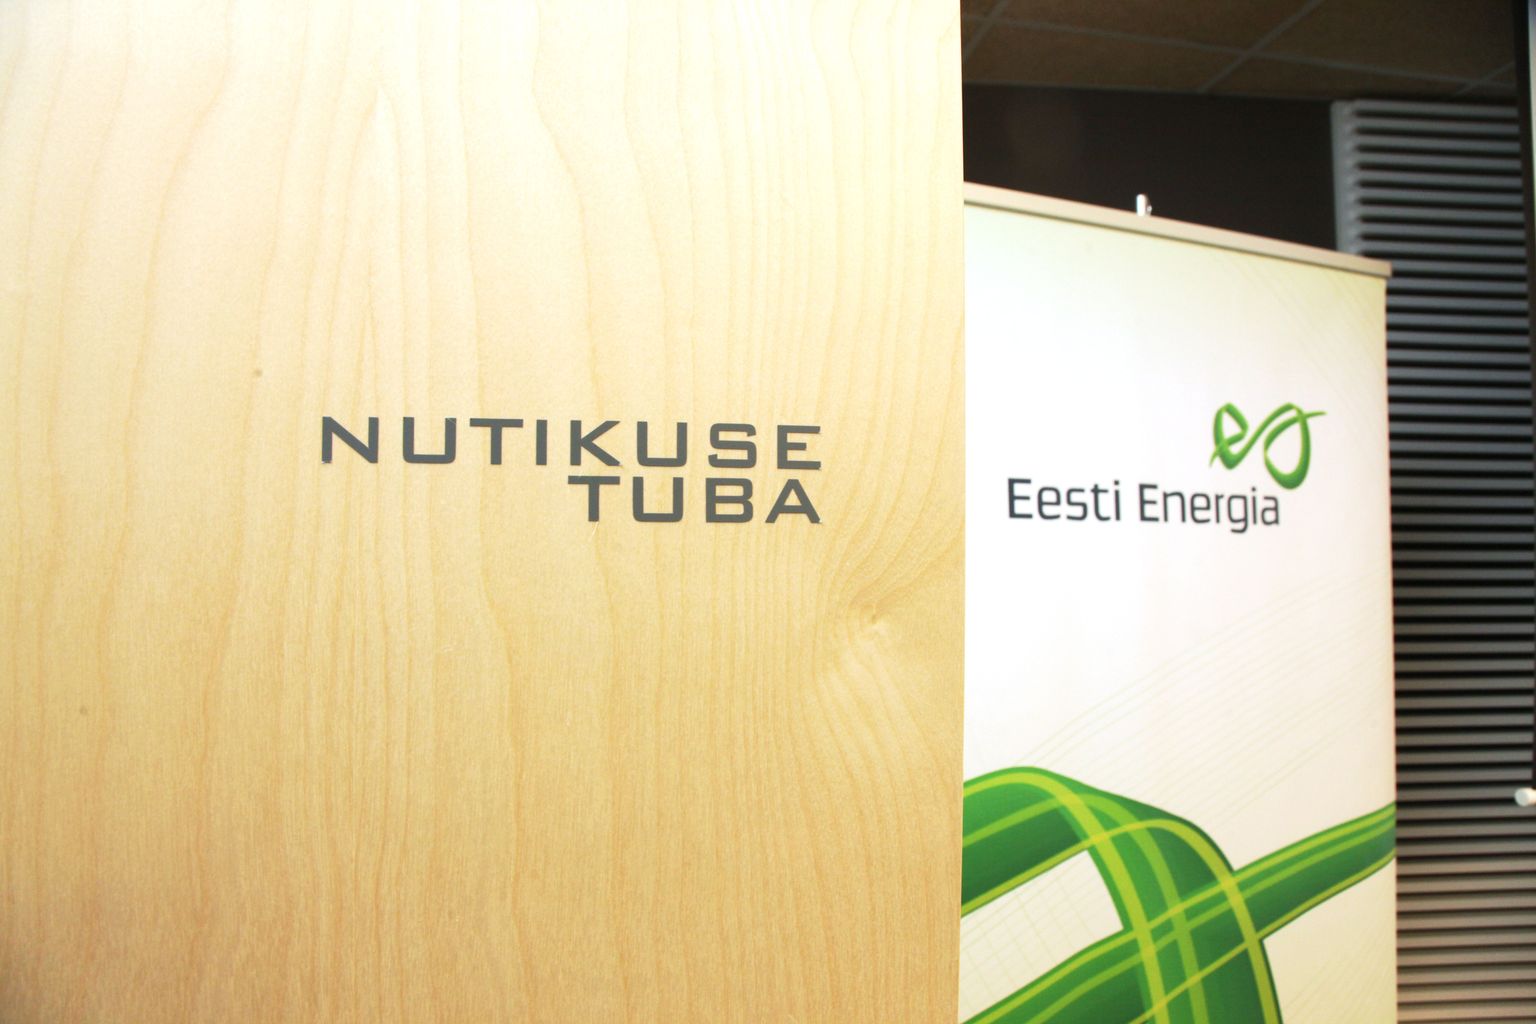 Логотип Eesti Energia.